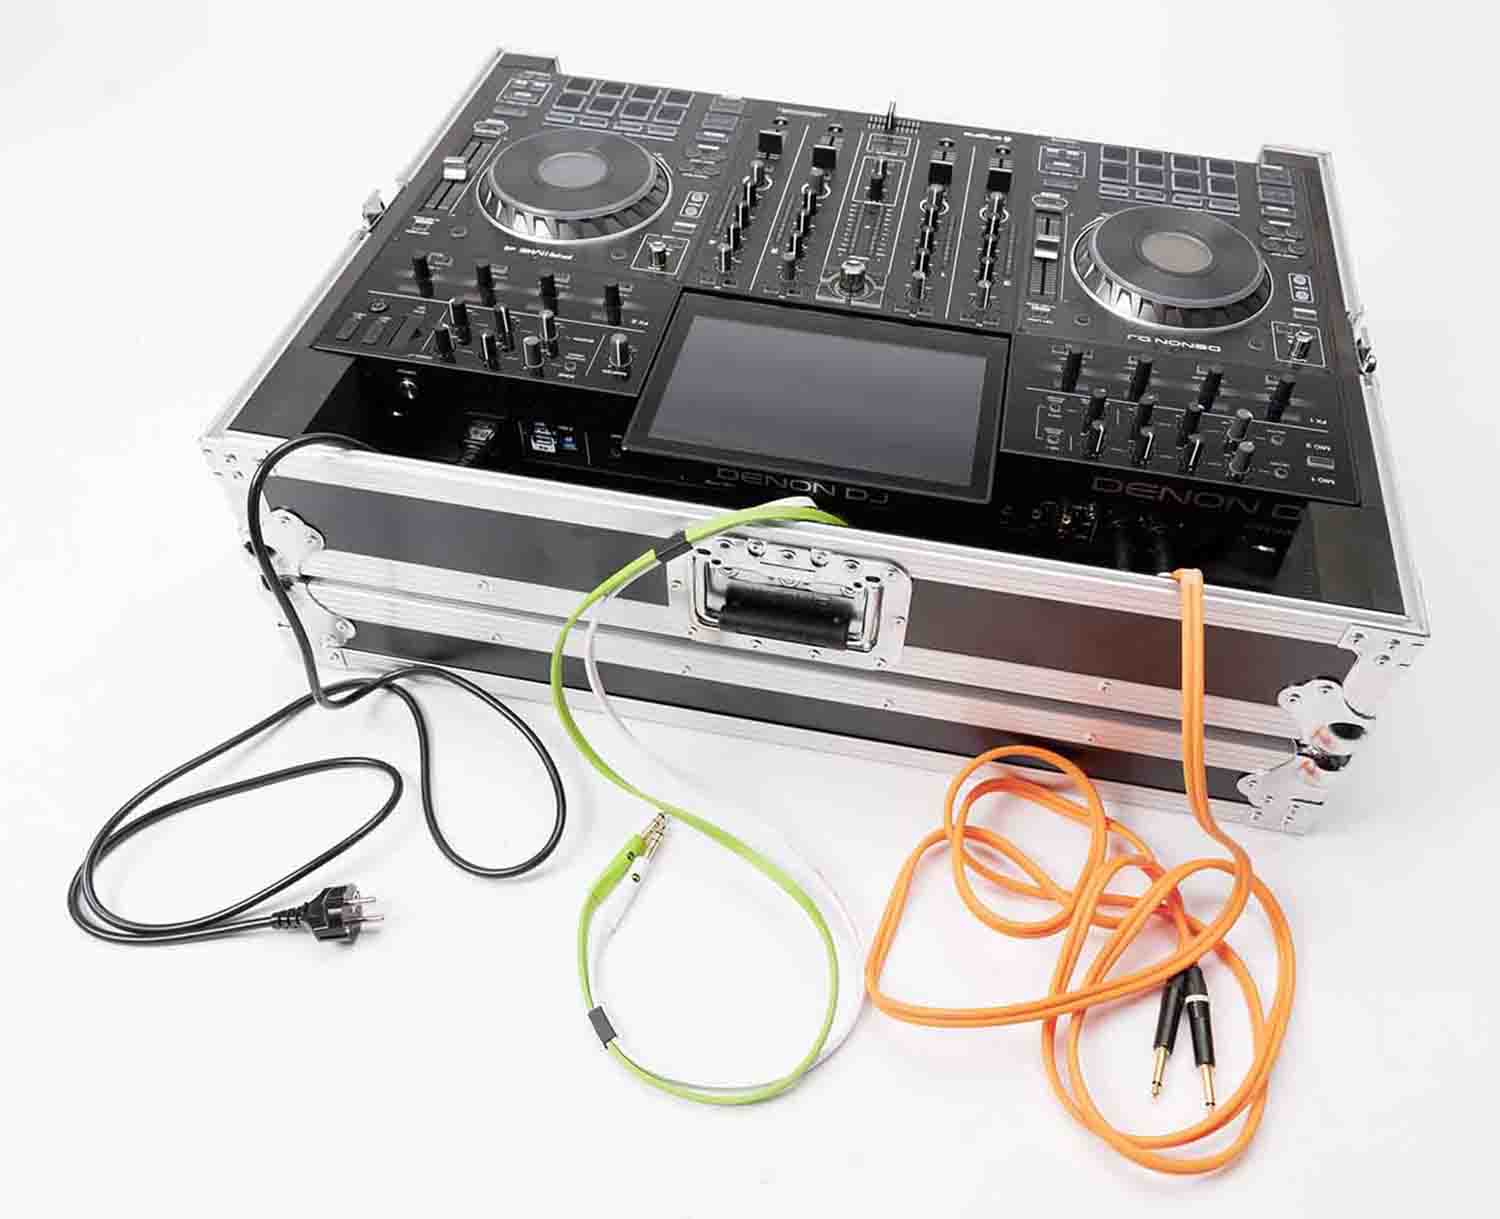 B-Stock: Magma MGA40994 DJ Controller Case For Denon Prime 4 - Hollywood DJ